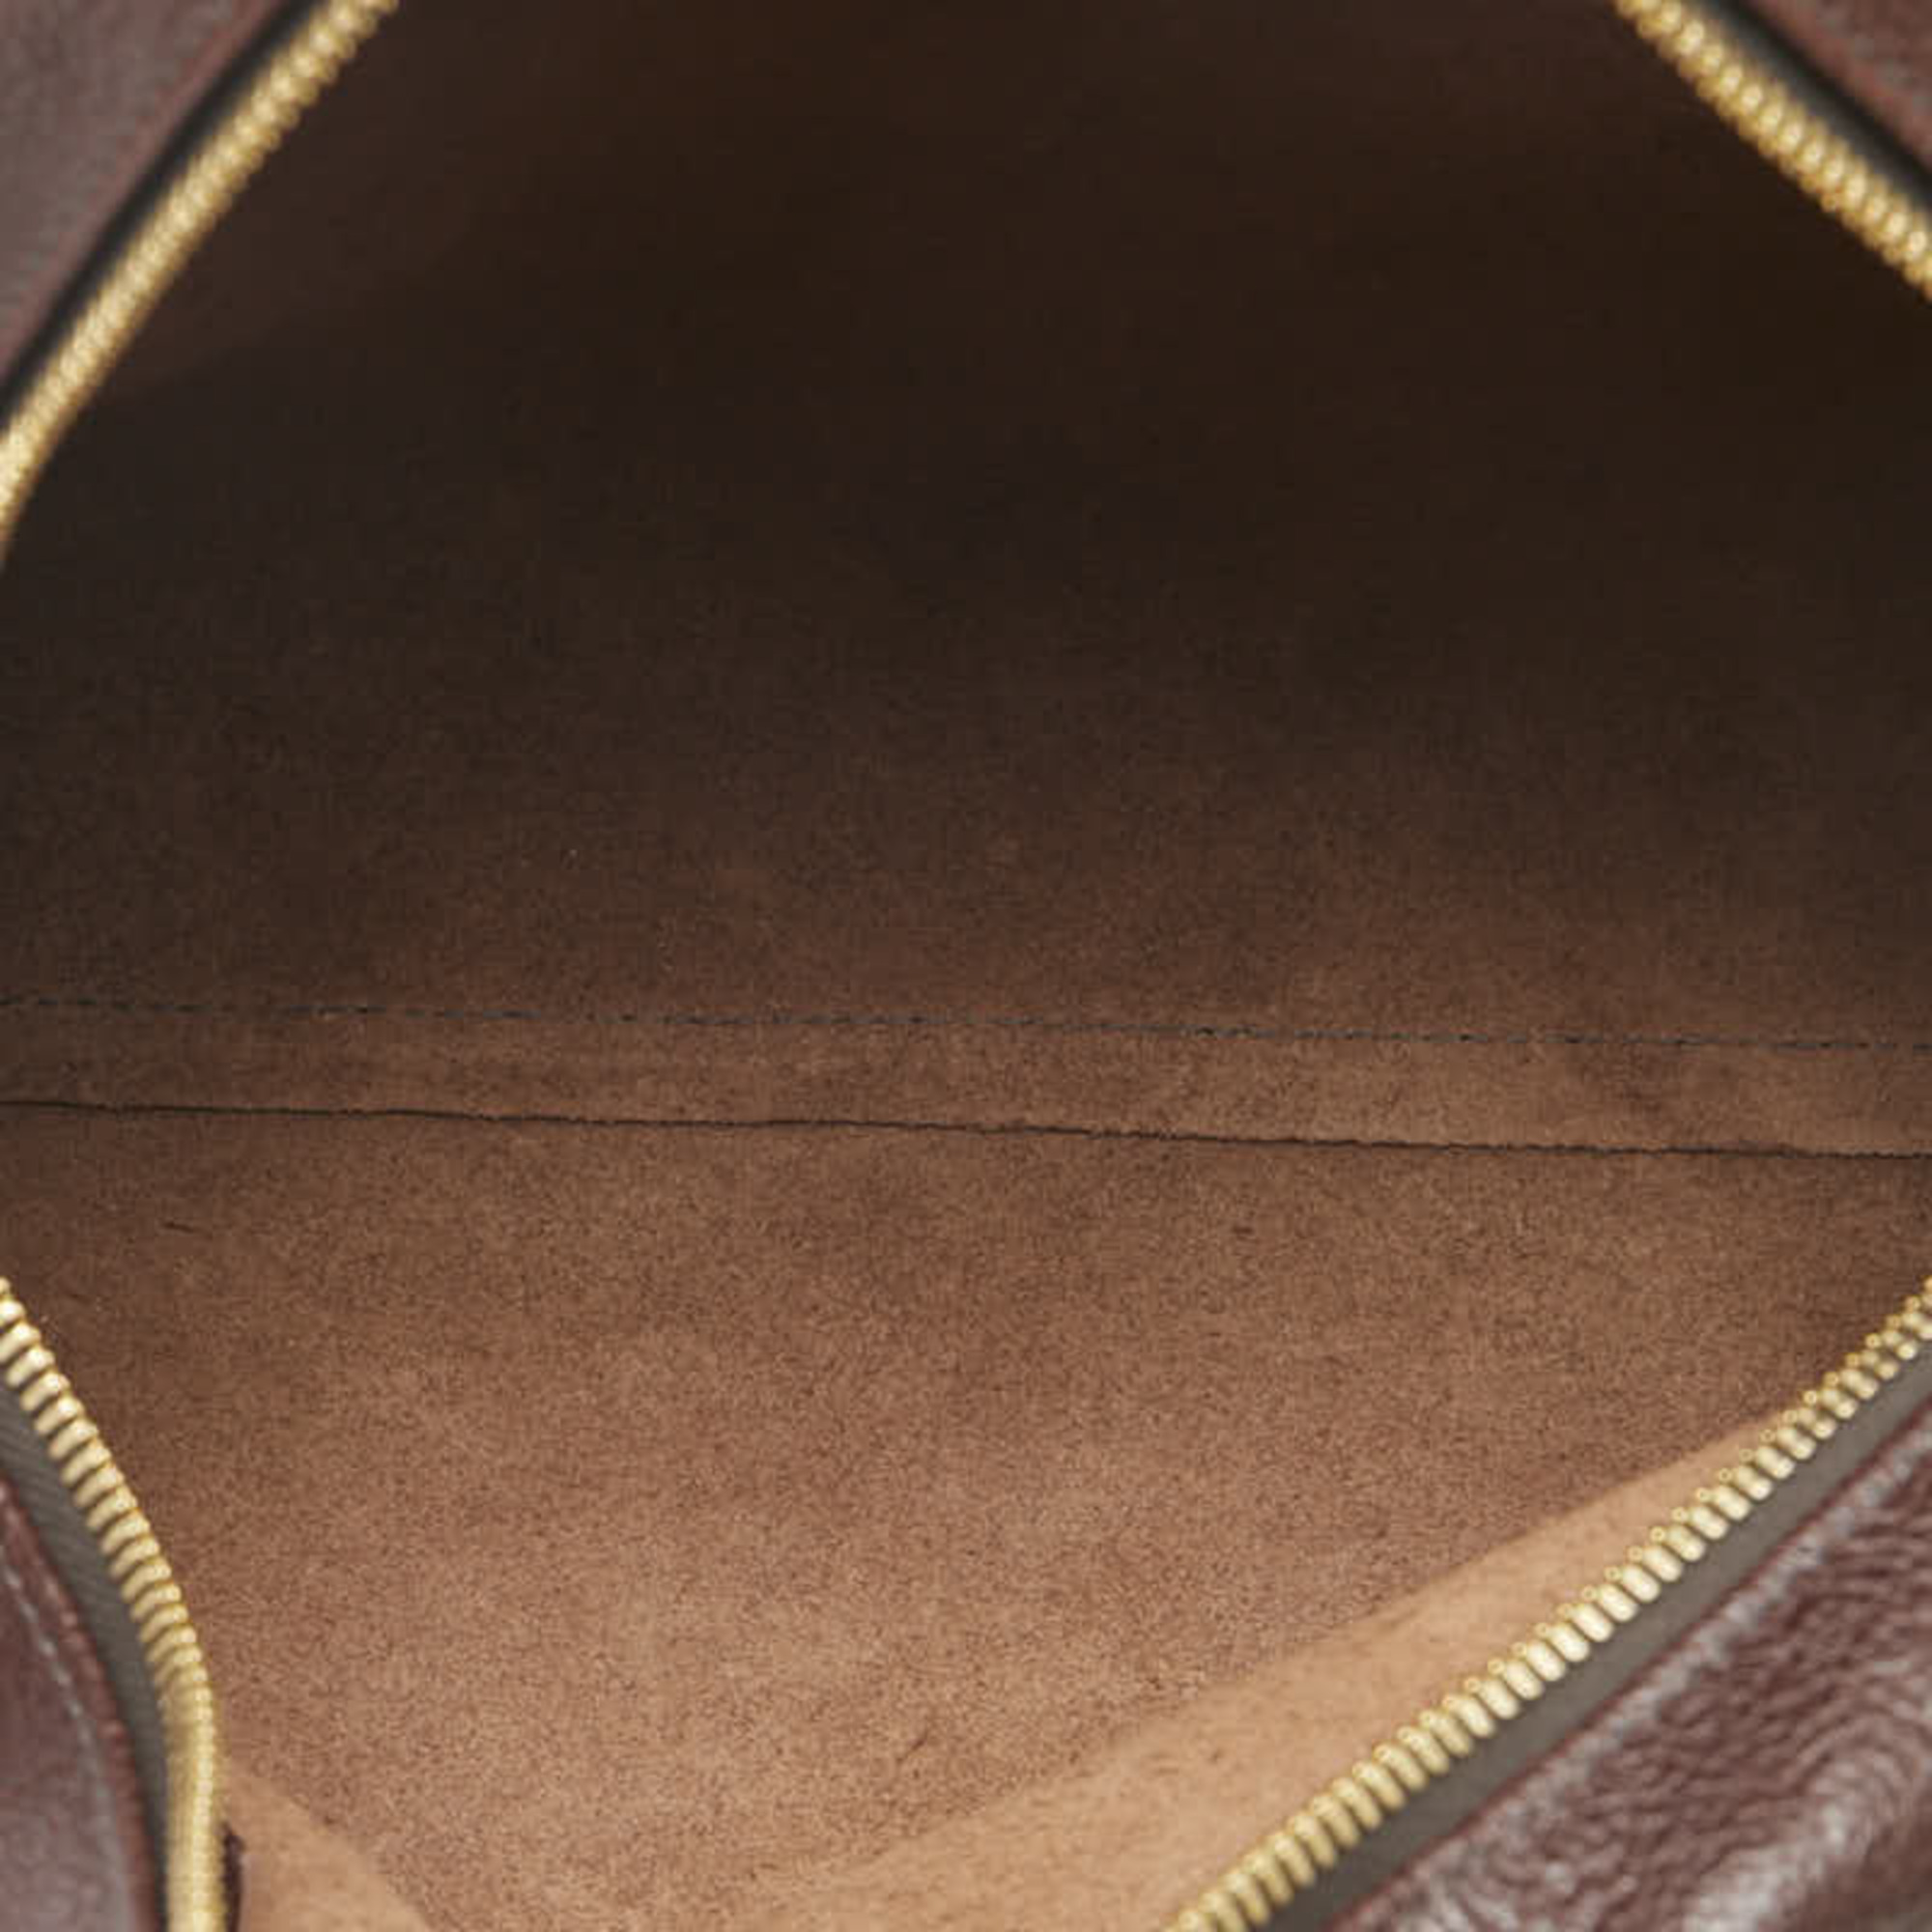 IL BISONTE Handbag Shoulder Bag Brown Leather Women's